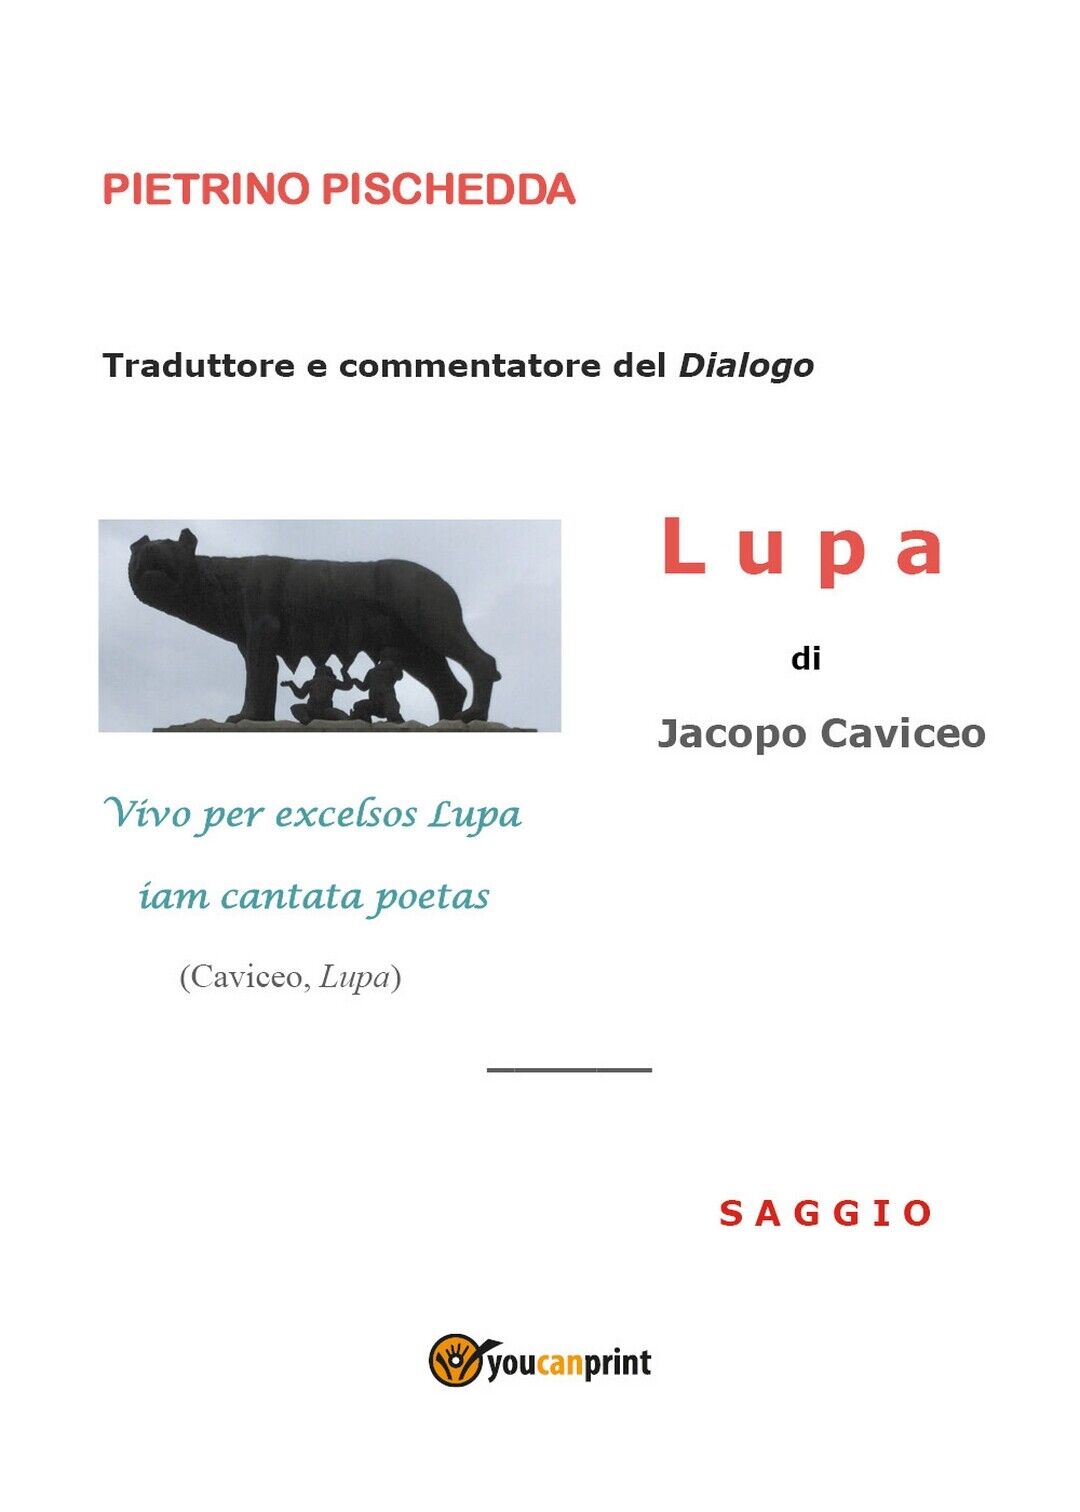 Lupa di Jacopo Caviceo - Saggio  di Pietrino Pischedda,  2018,  Youcanprint